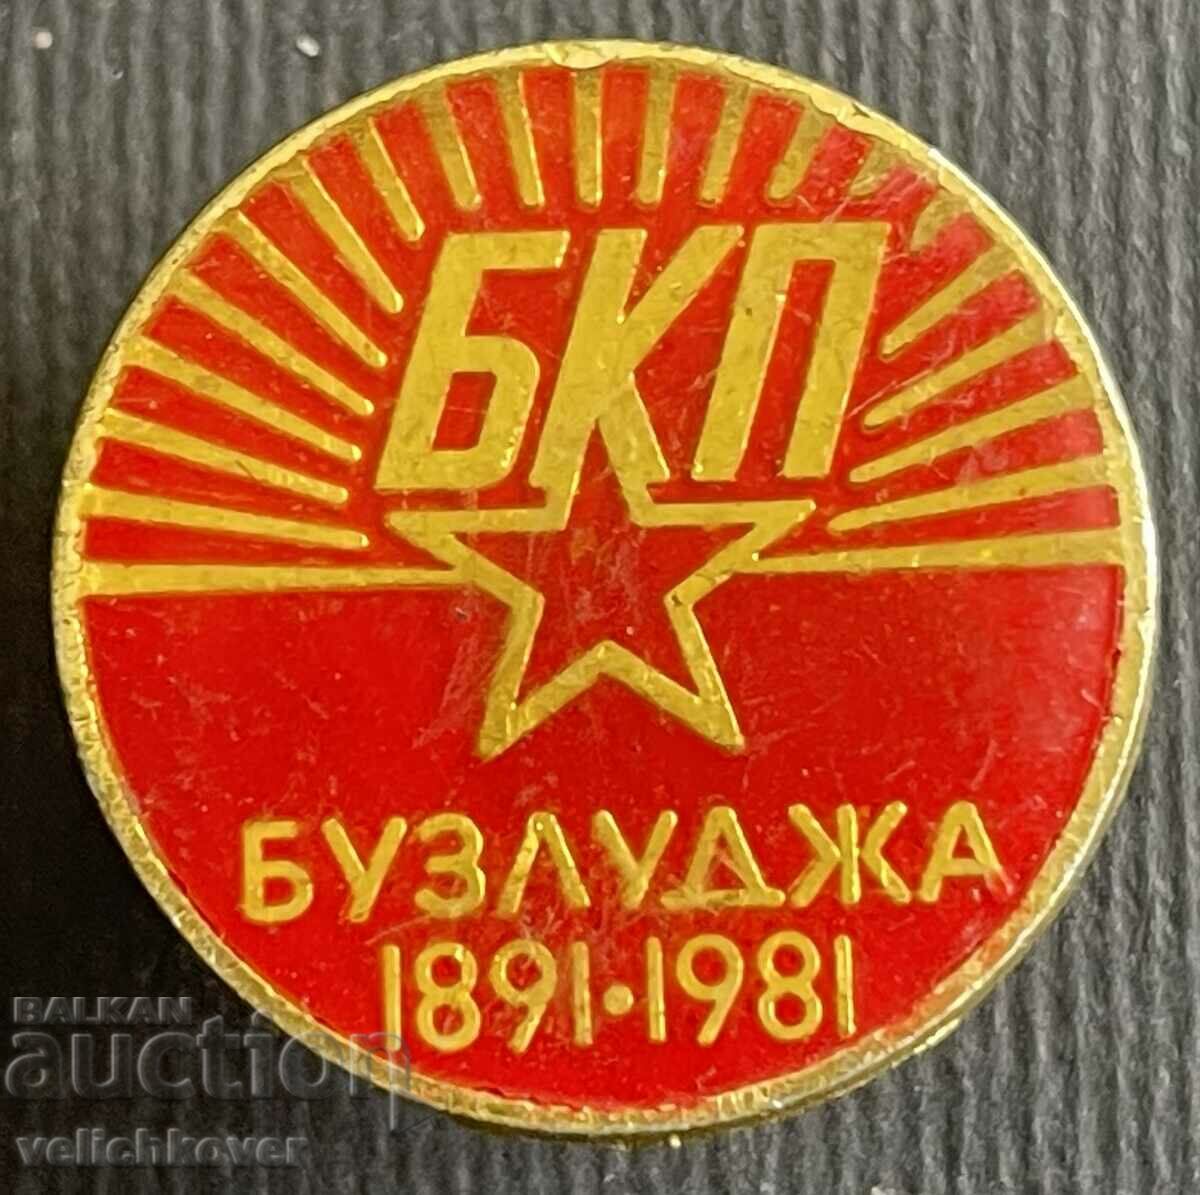 36834 Bulgaria semn 90 BKP Buzludzha 1891-1981.